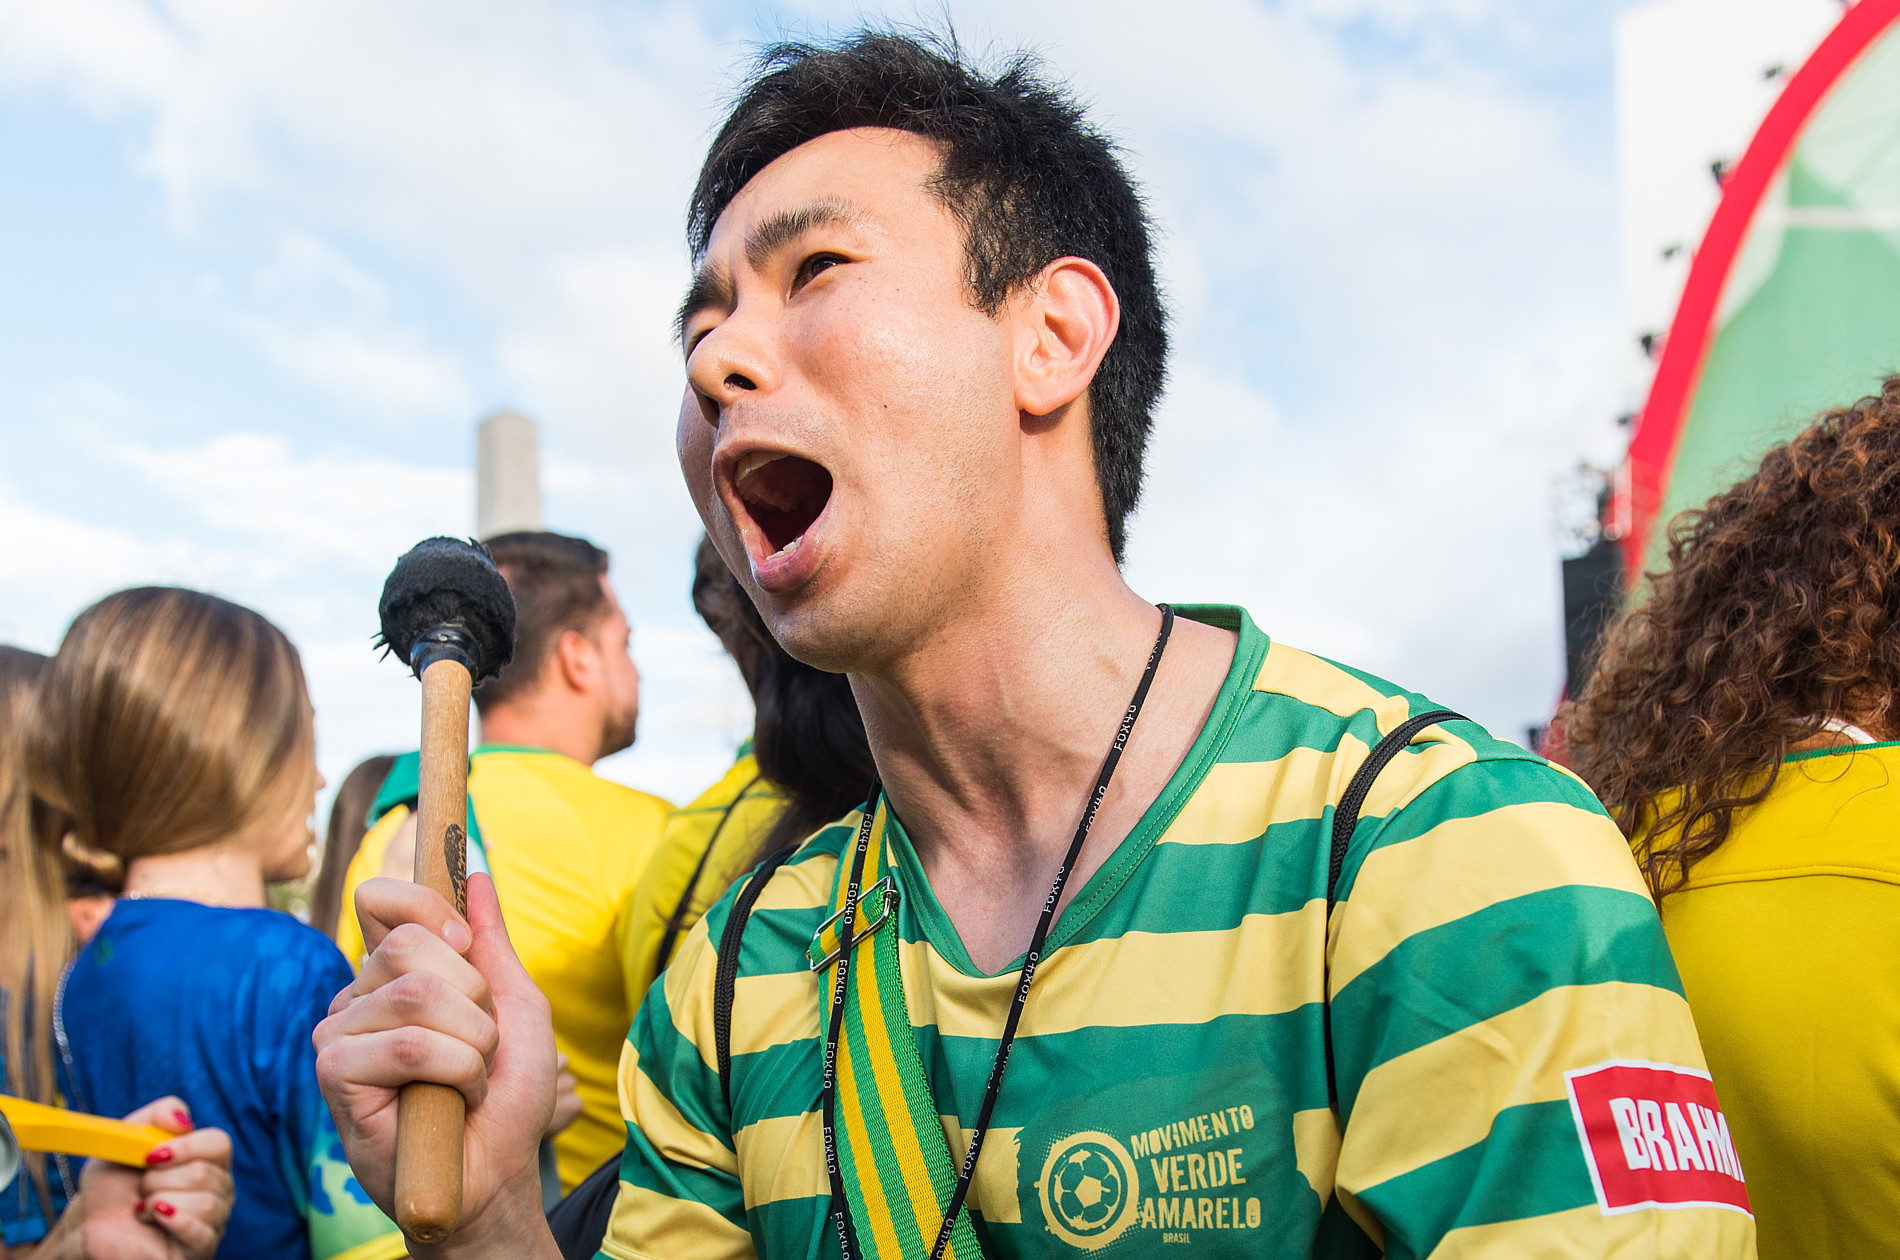 Movimento Verde e Amarelo - Primeiro Jogo | Luciano Braz Fotografia